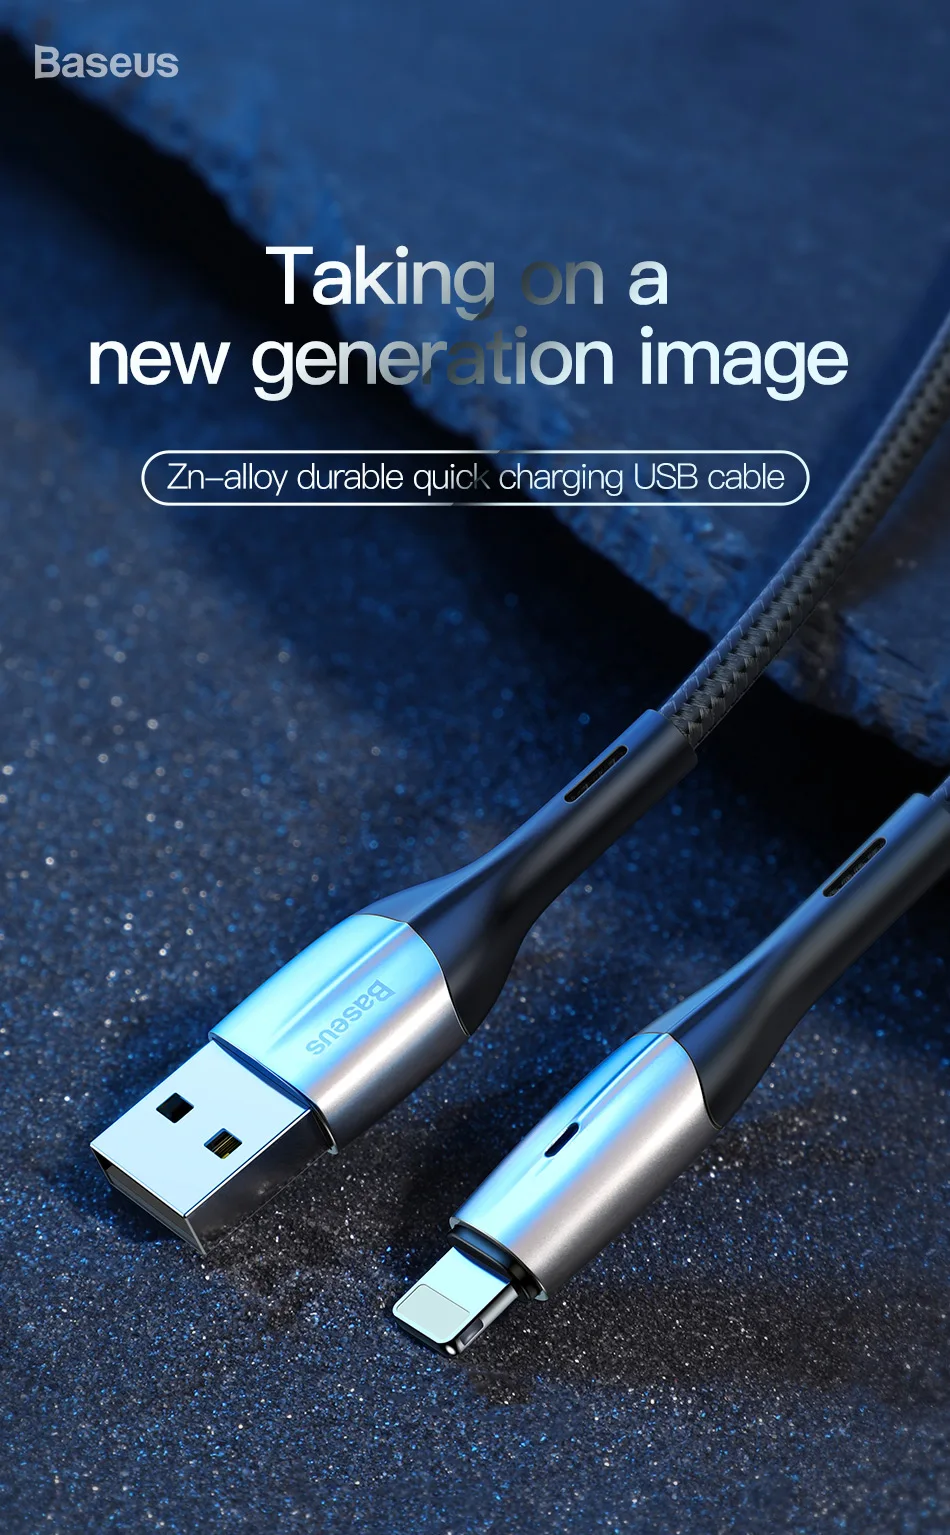 Baseus Освещение USB кабель для iPhone Xs Max Xr X S 2.4A кабель передачи данных для быстрой зарядки для iPhone 8 7 6 iPad мобильный телефон зарядное устройство Шнур